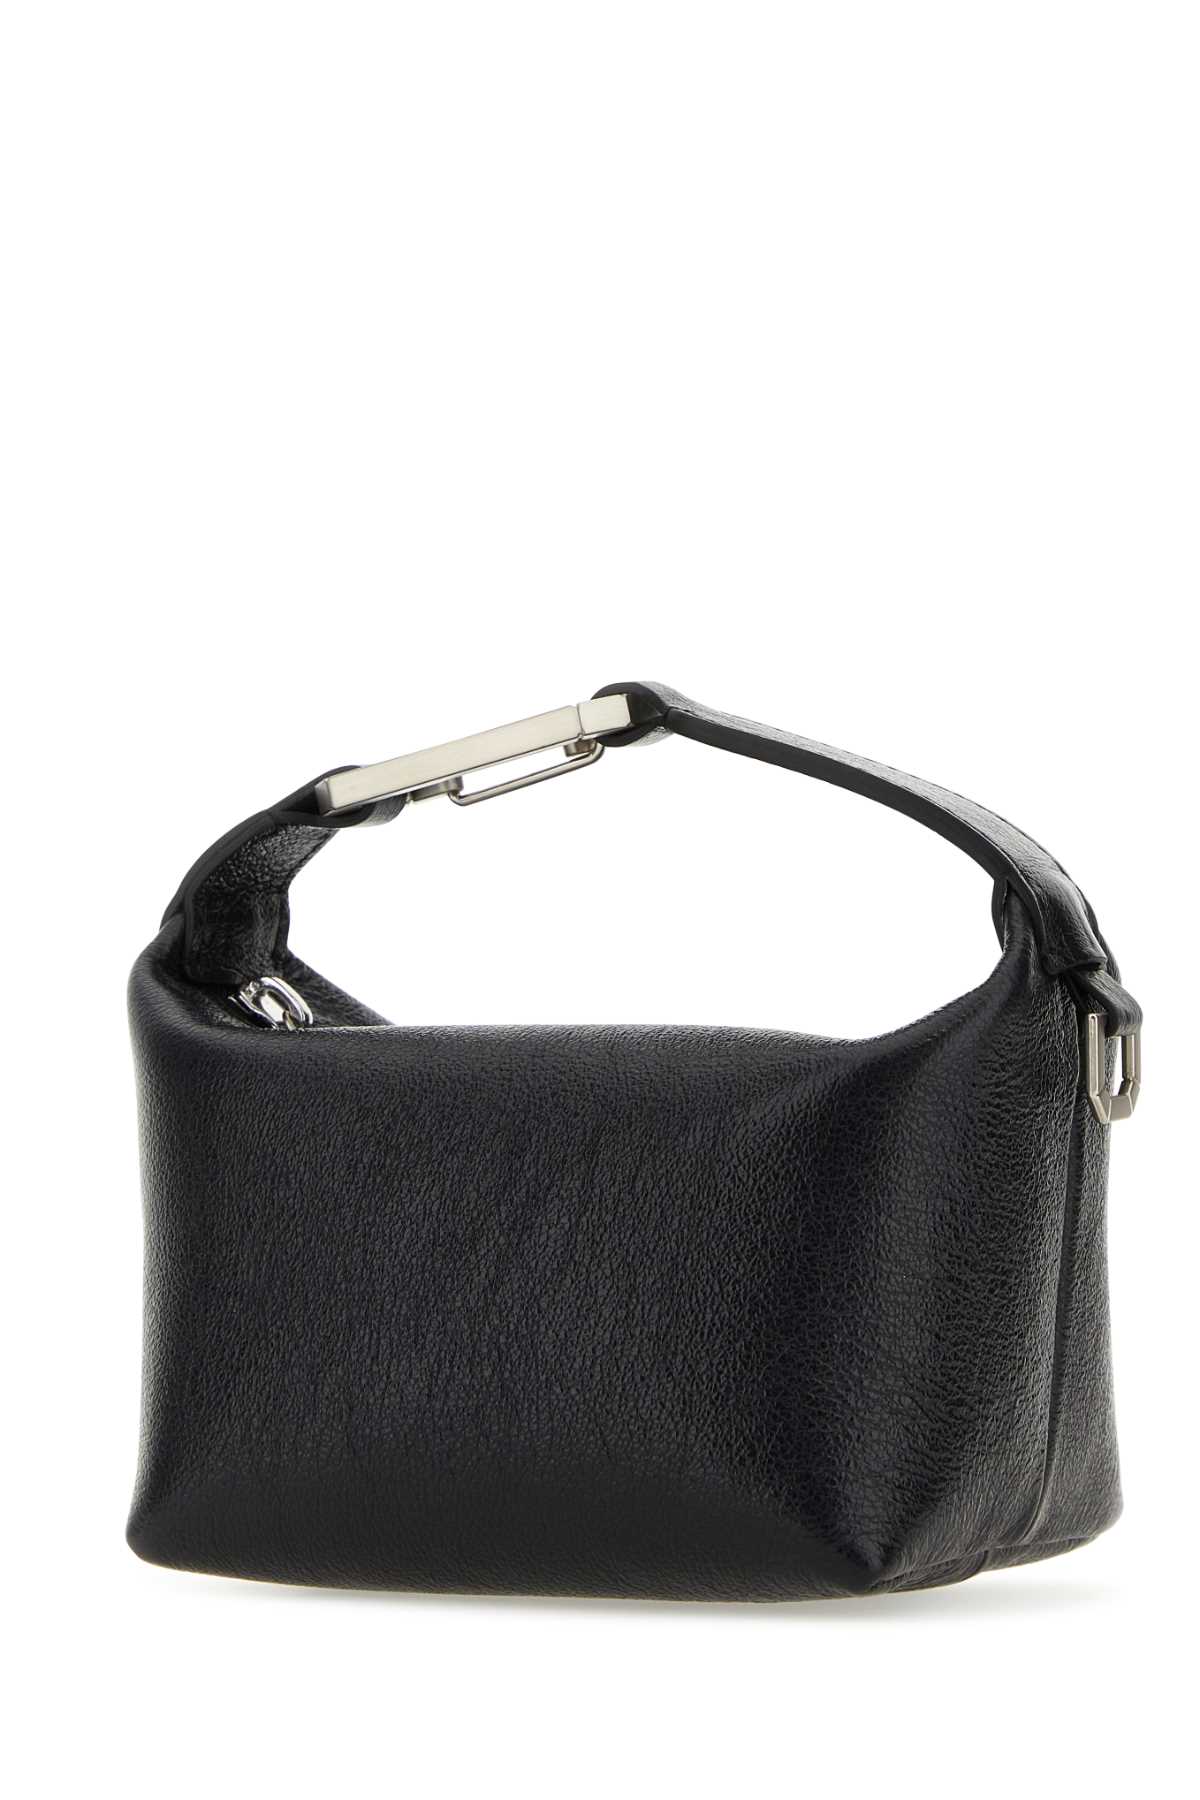 Shop Eéra Black Leather Moonbag Handbag